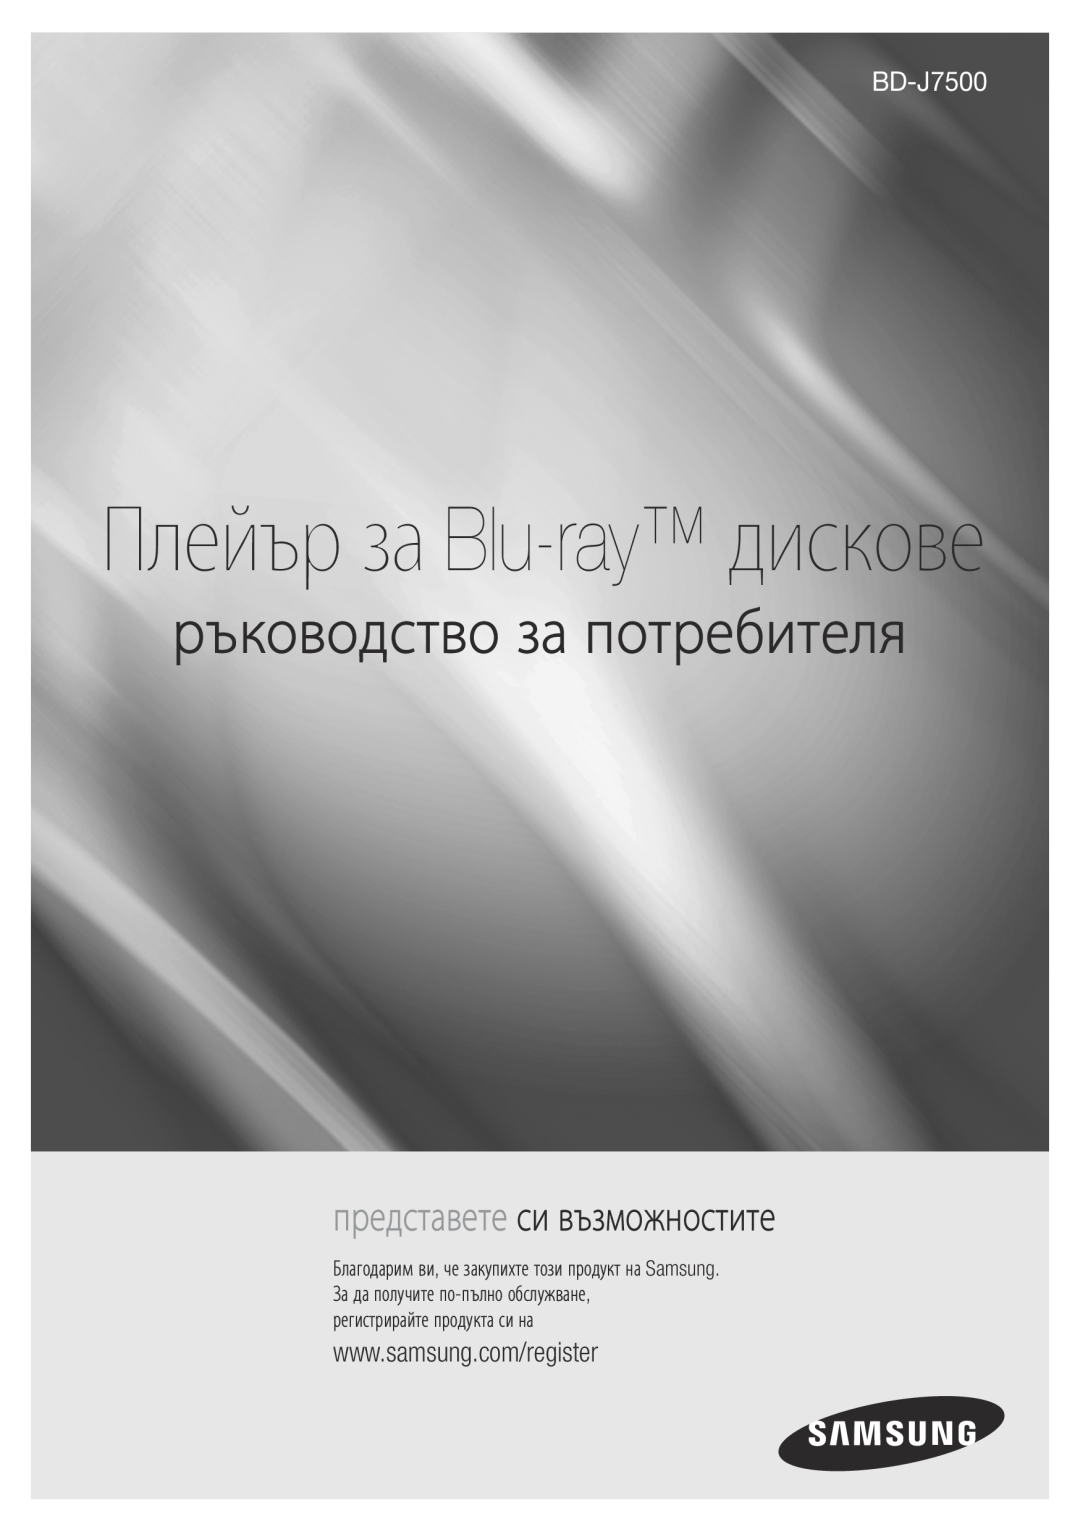 Samsung BD-J7500/EN manual Плейър за Blu-ray дискове, ръководство за потребителя, представете си възможностите 